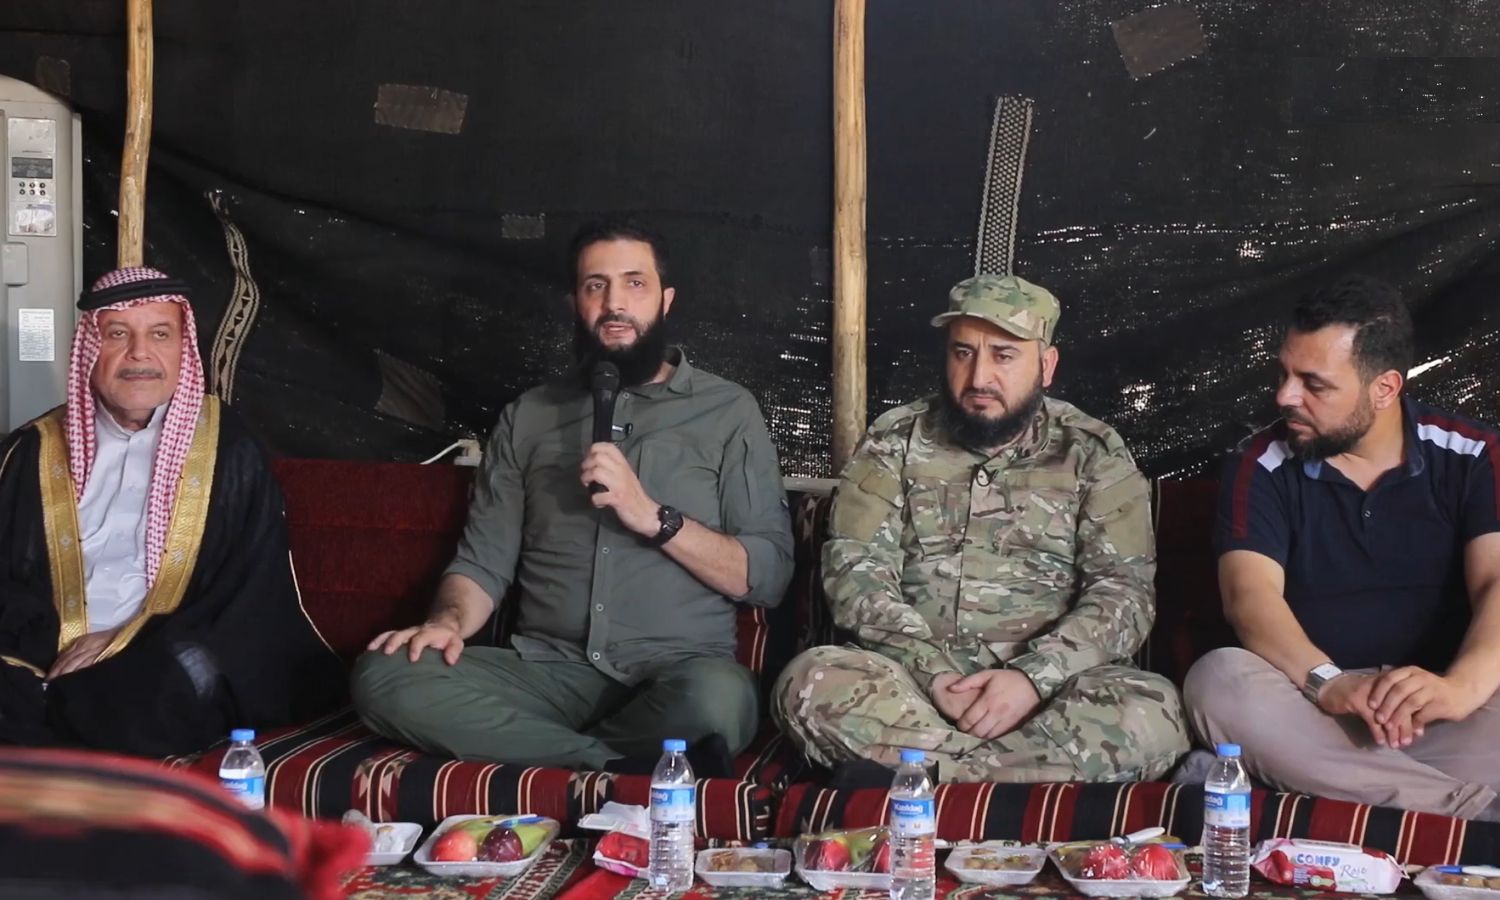 قائد "هيئة تحرير الشام" "أبو محمد الجولاني" مع شخصيات في "الهيئة" ووجهاء من مدينة حماة مهجرين إلى إدلب- 24 من تموز 2022 (أمجاد)